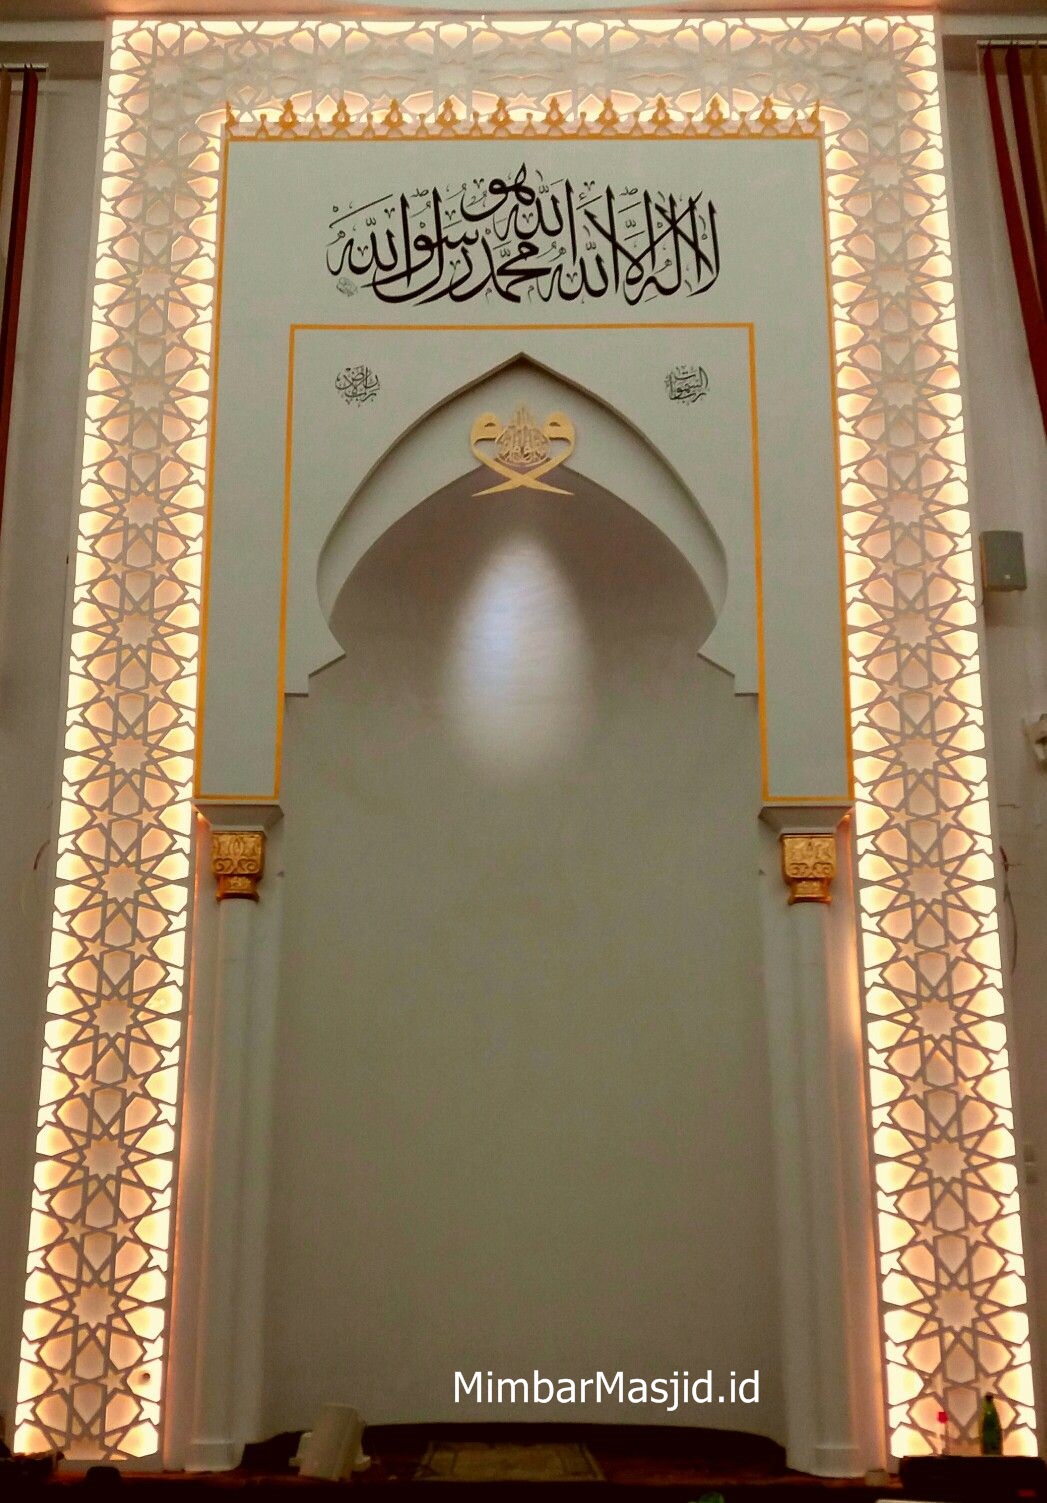 Model Gambar Mihrab Masjid Mewah Terbaru